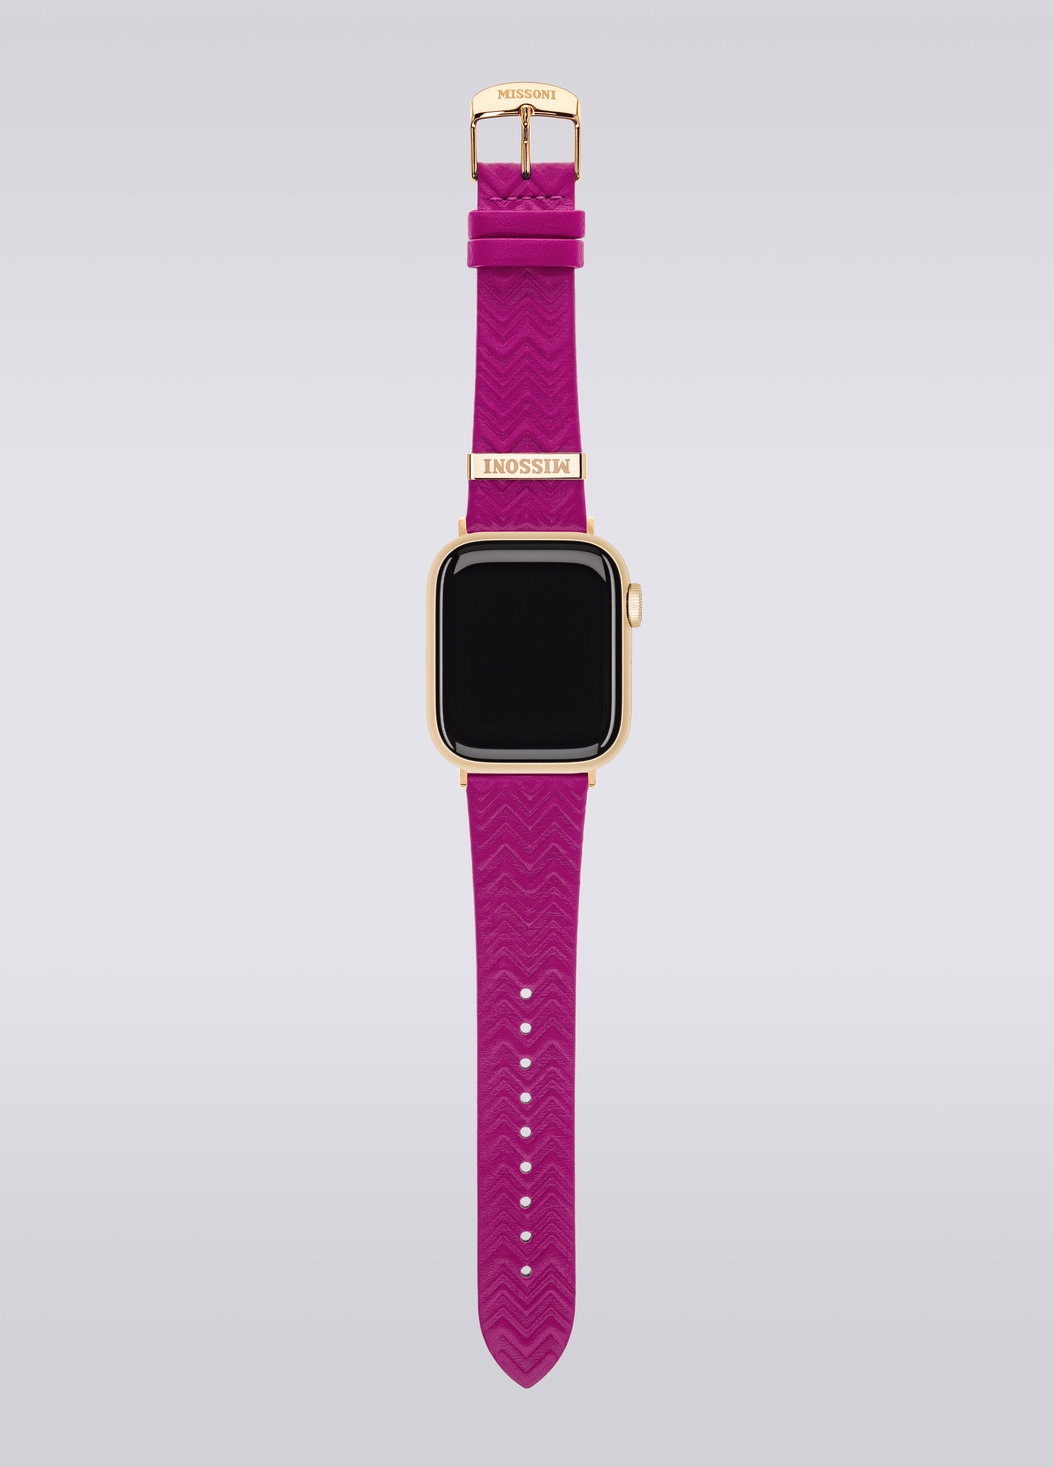 Missoni Zigzag 22mm Apple strap, Multicoloured  - 8051575781858 - 3